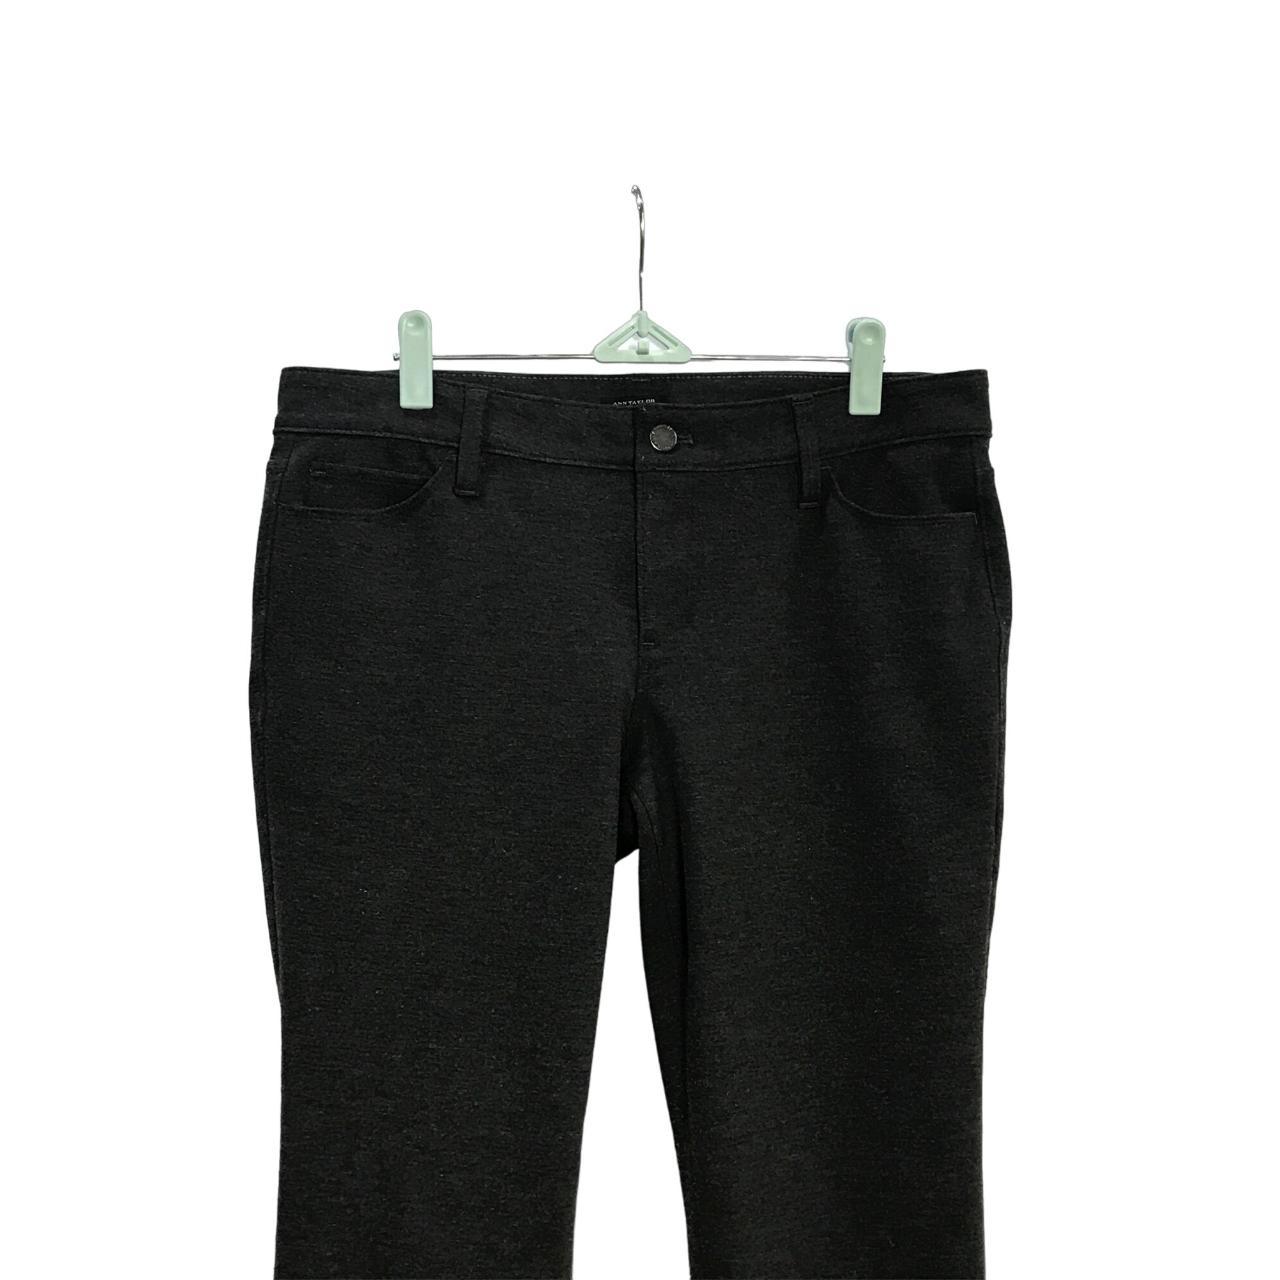 Ann Taylor Factory Modern Fit Dress Pants Size 10